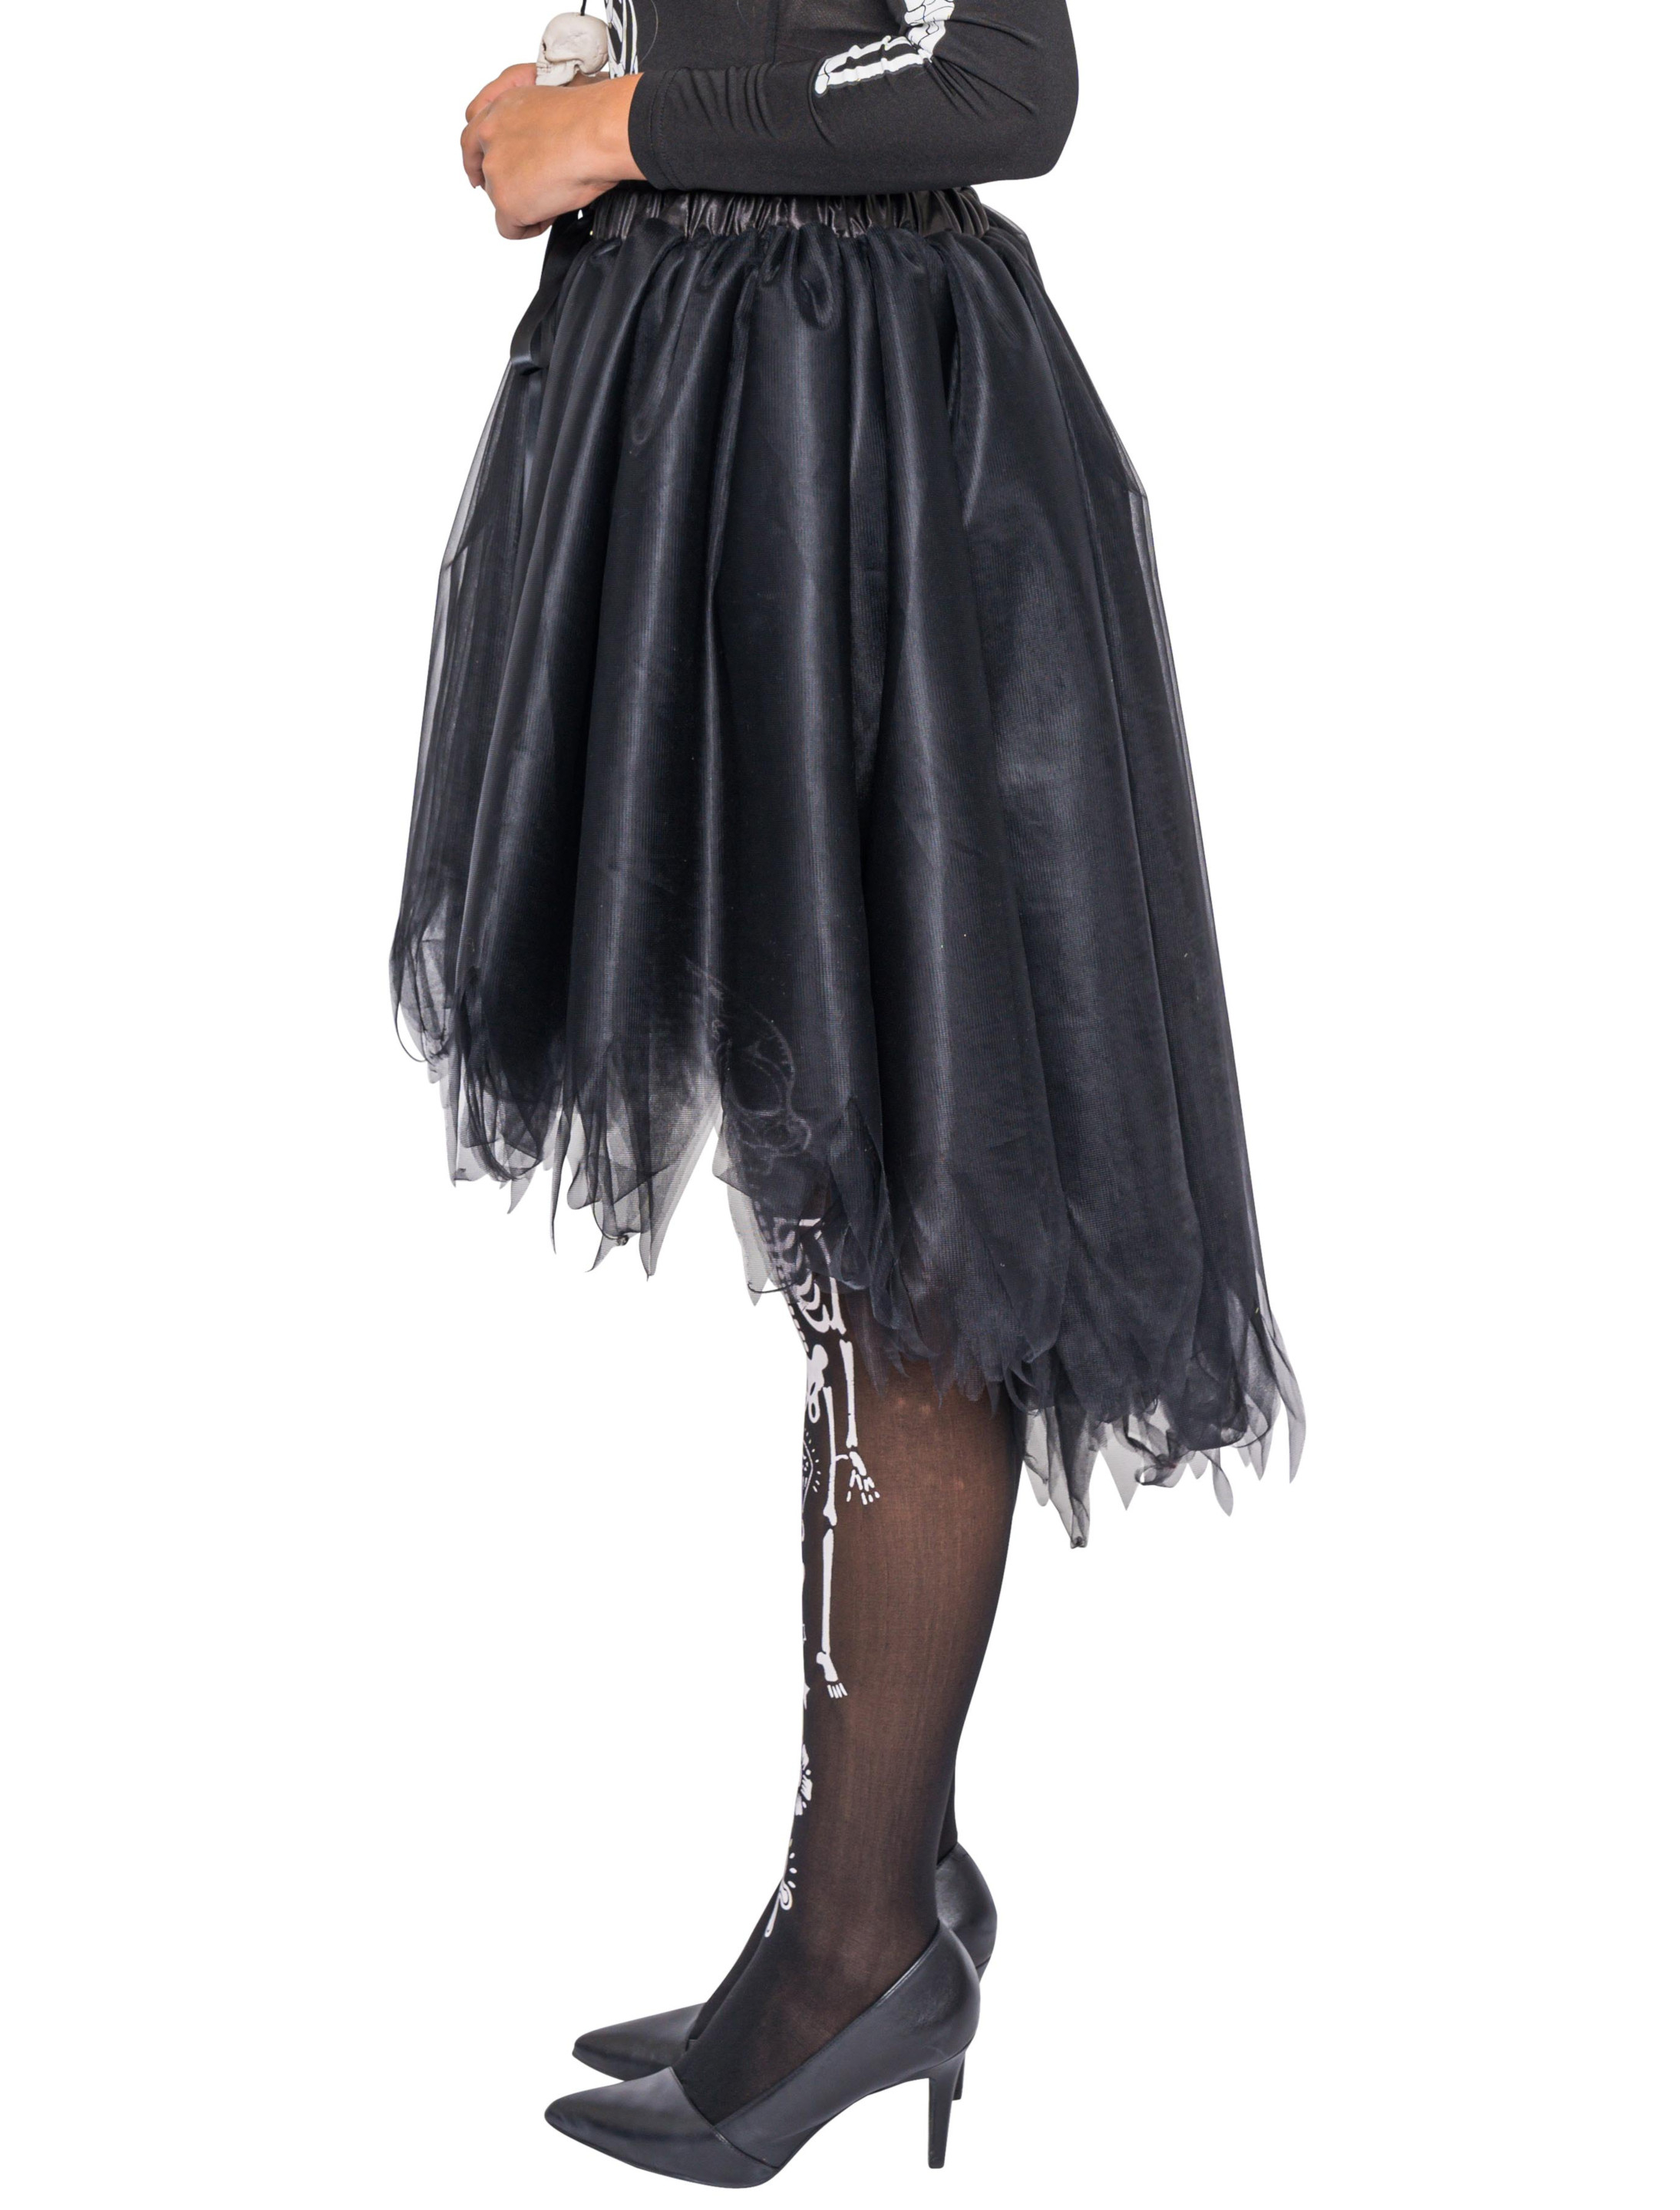 Petticoat deluxe Damen schwarz one size